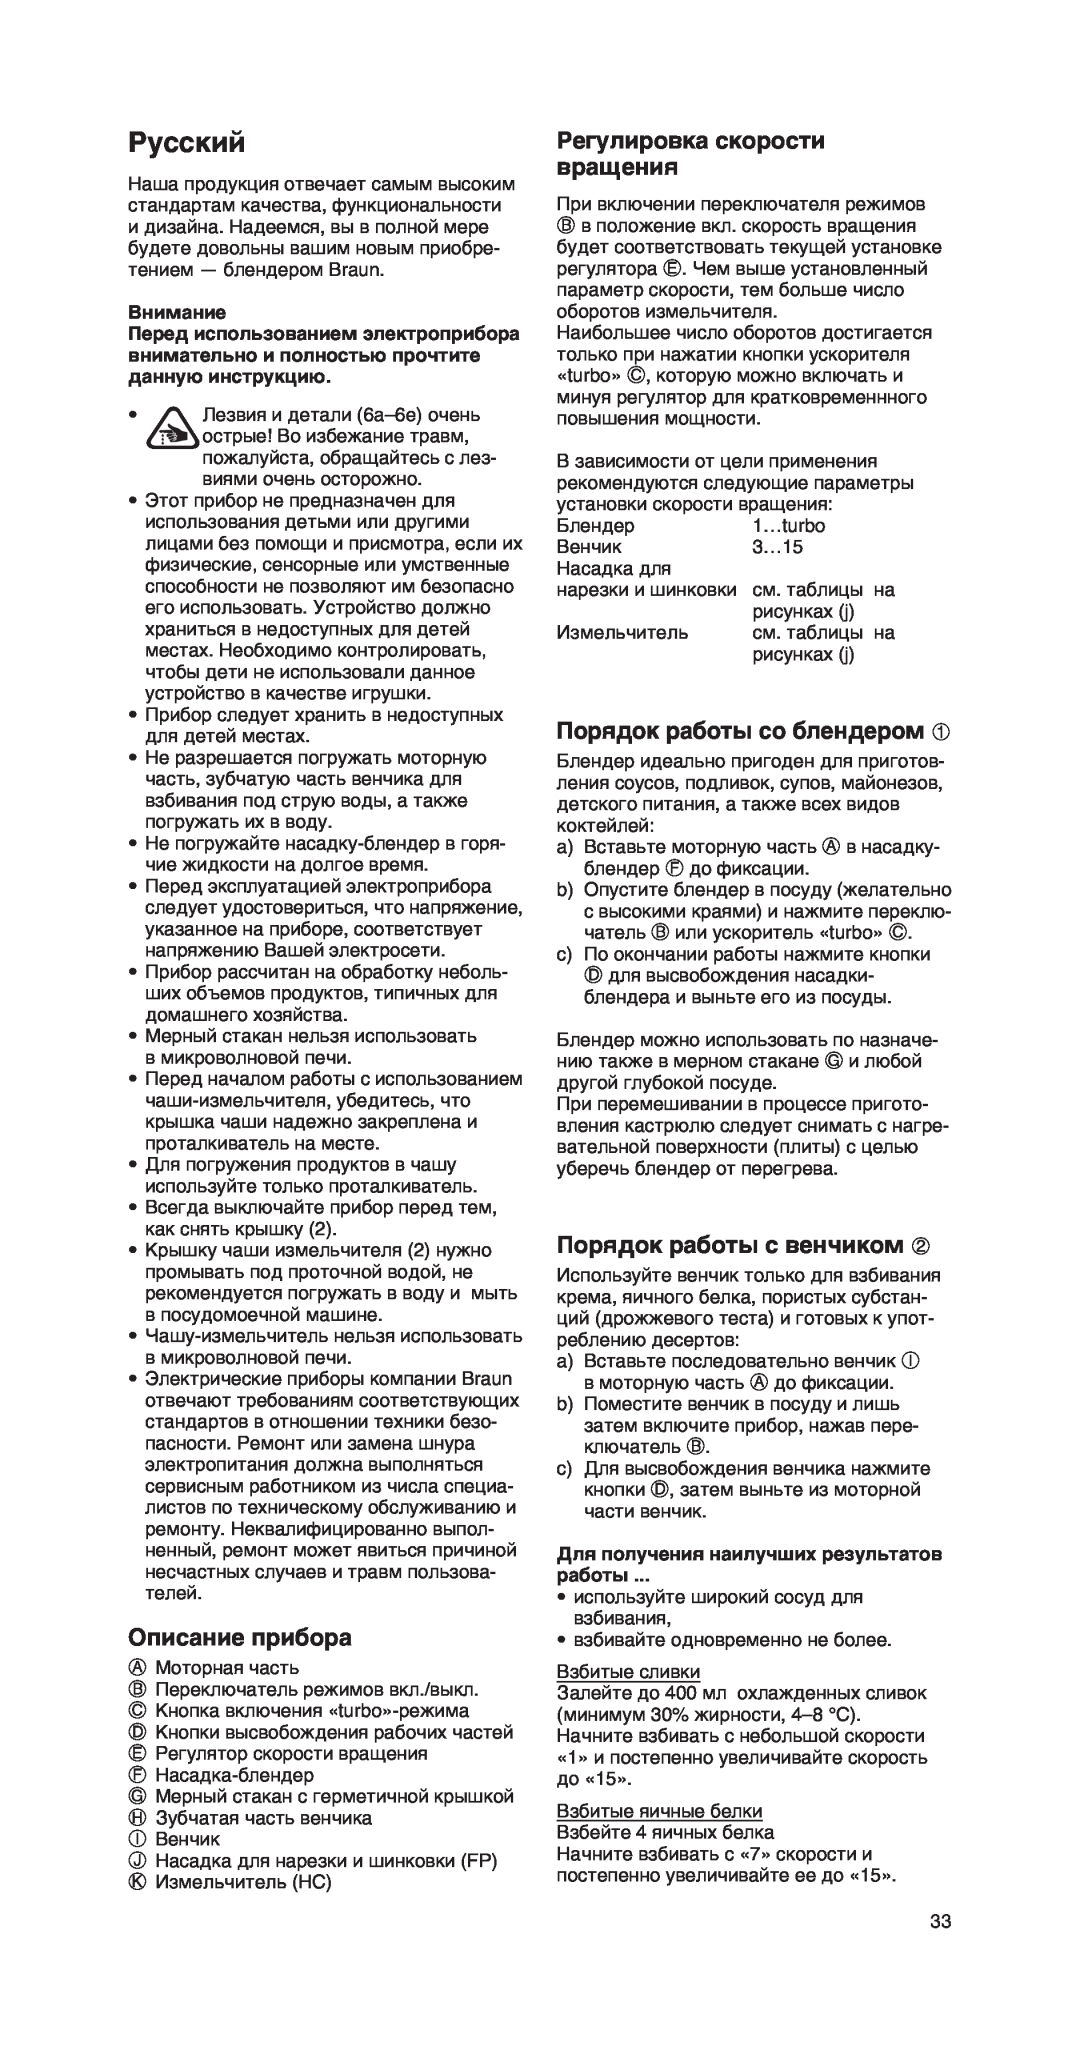 Braun MR 550 Buffet manual Русский, Описание прибора, Регулировка скорости вращения, Порядок работы со блендером, Внимание 